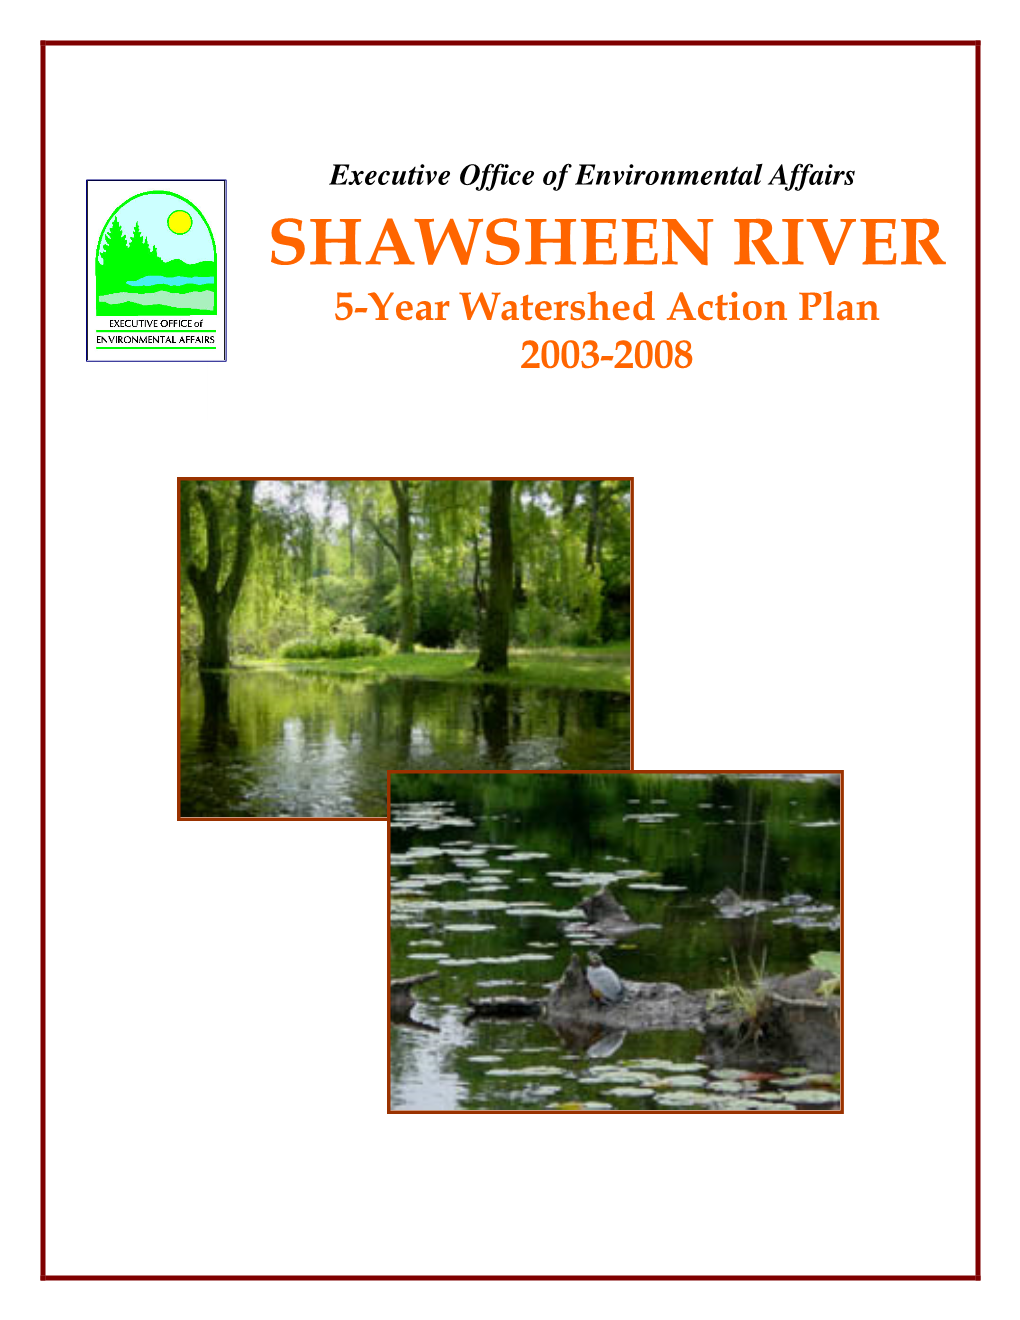 Shawsheen River